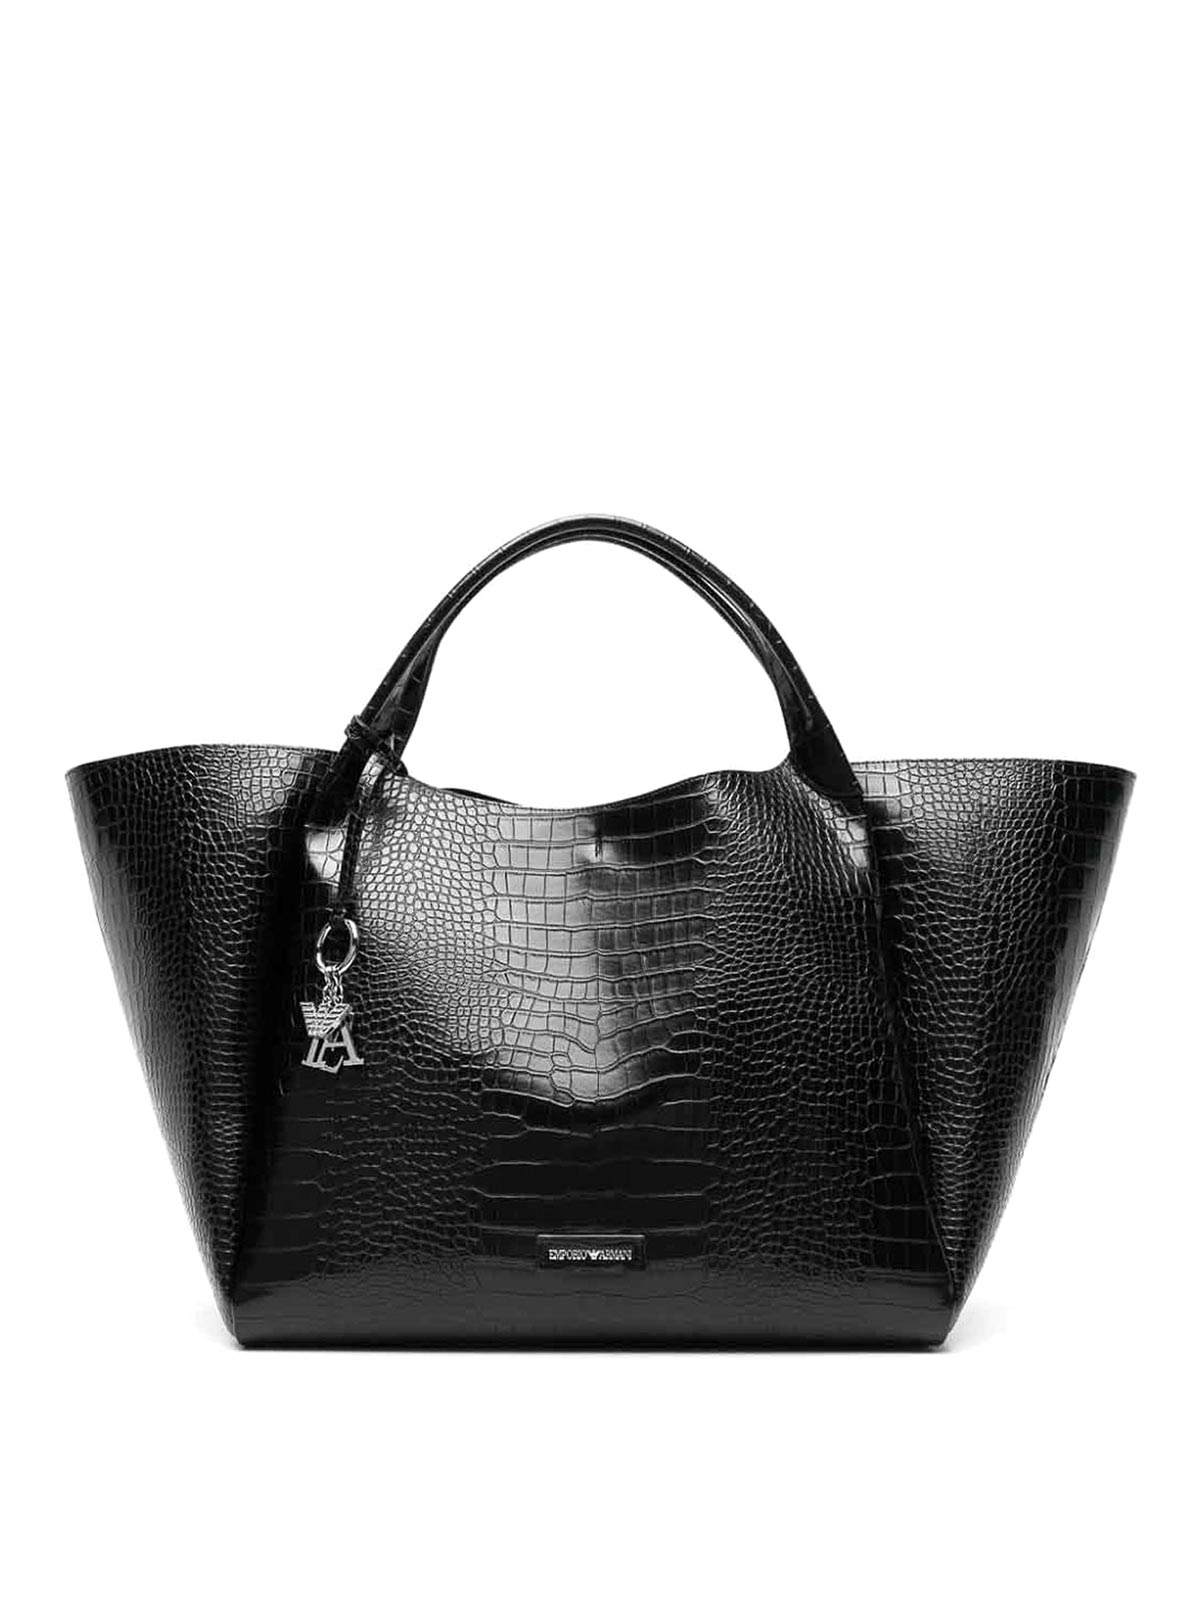 Emporio Armani Logo Shopping Bag In Black